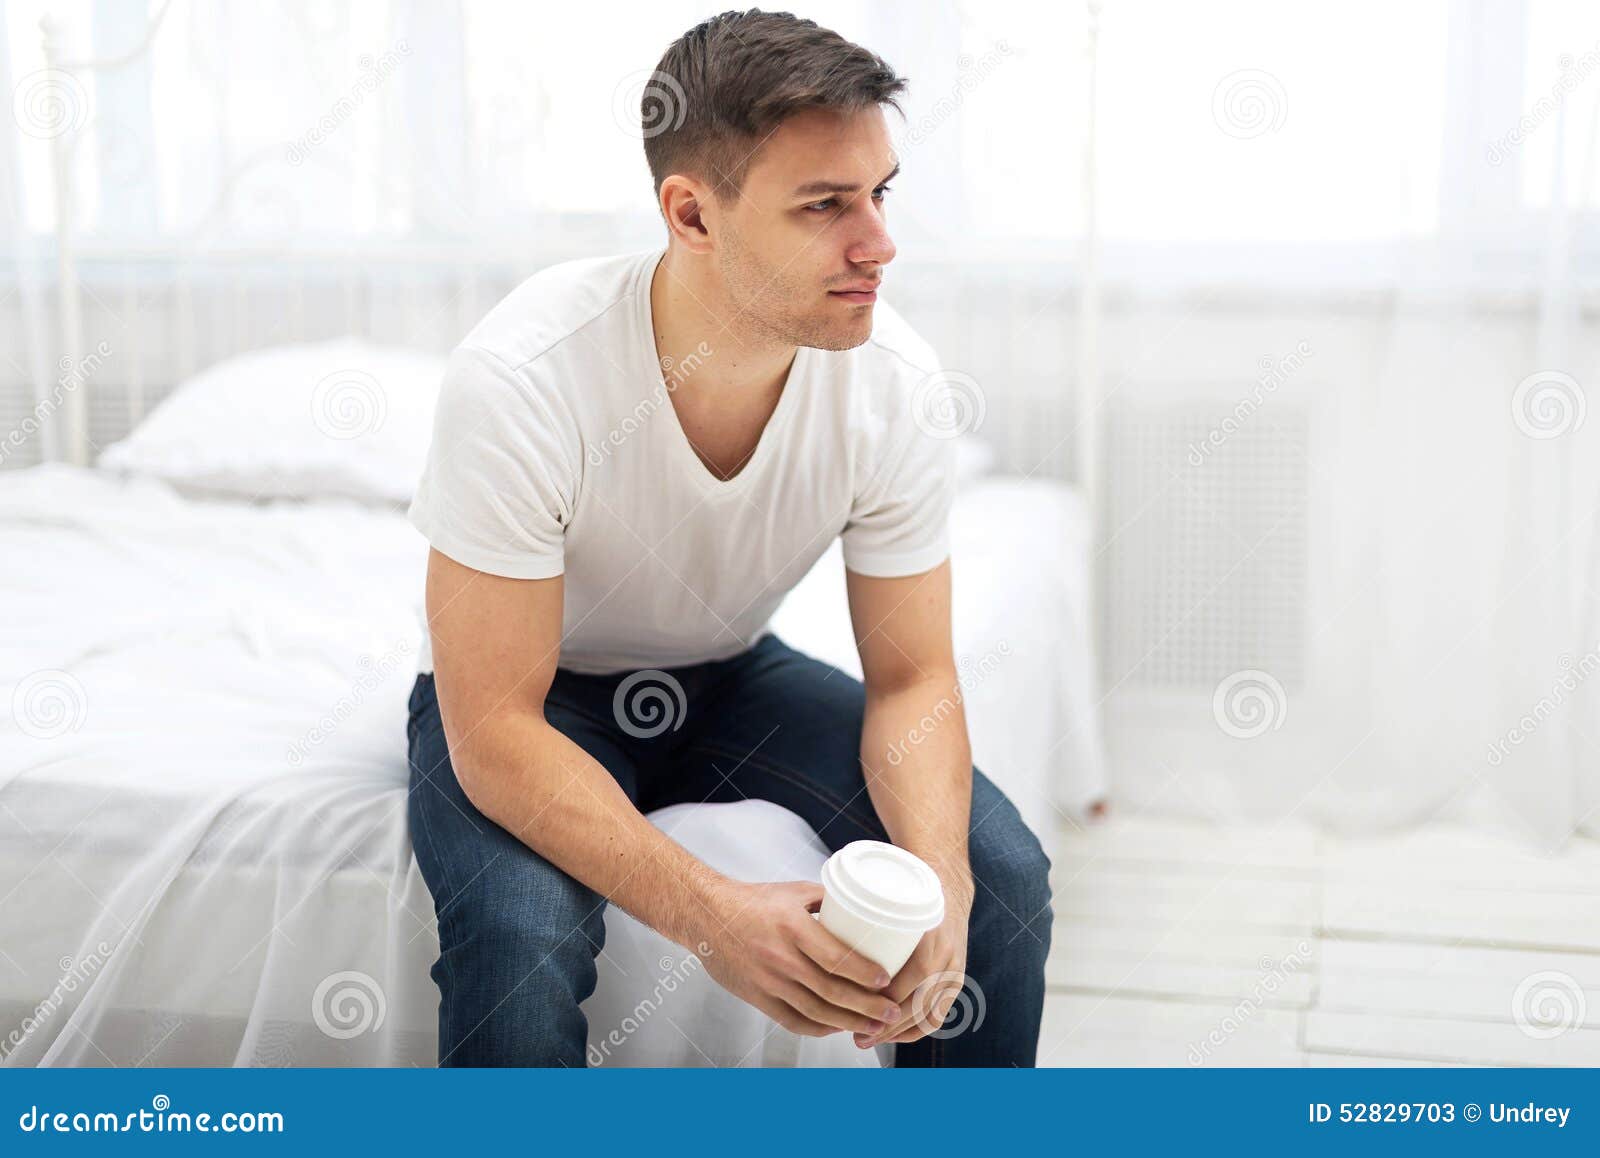 Сонник мужчина сидит. Парень в футболке сидит. Парень в белой футболке. Человек сидит на кровати. Парень в белой майке.